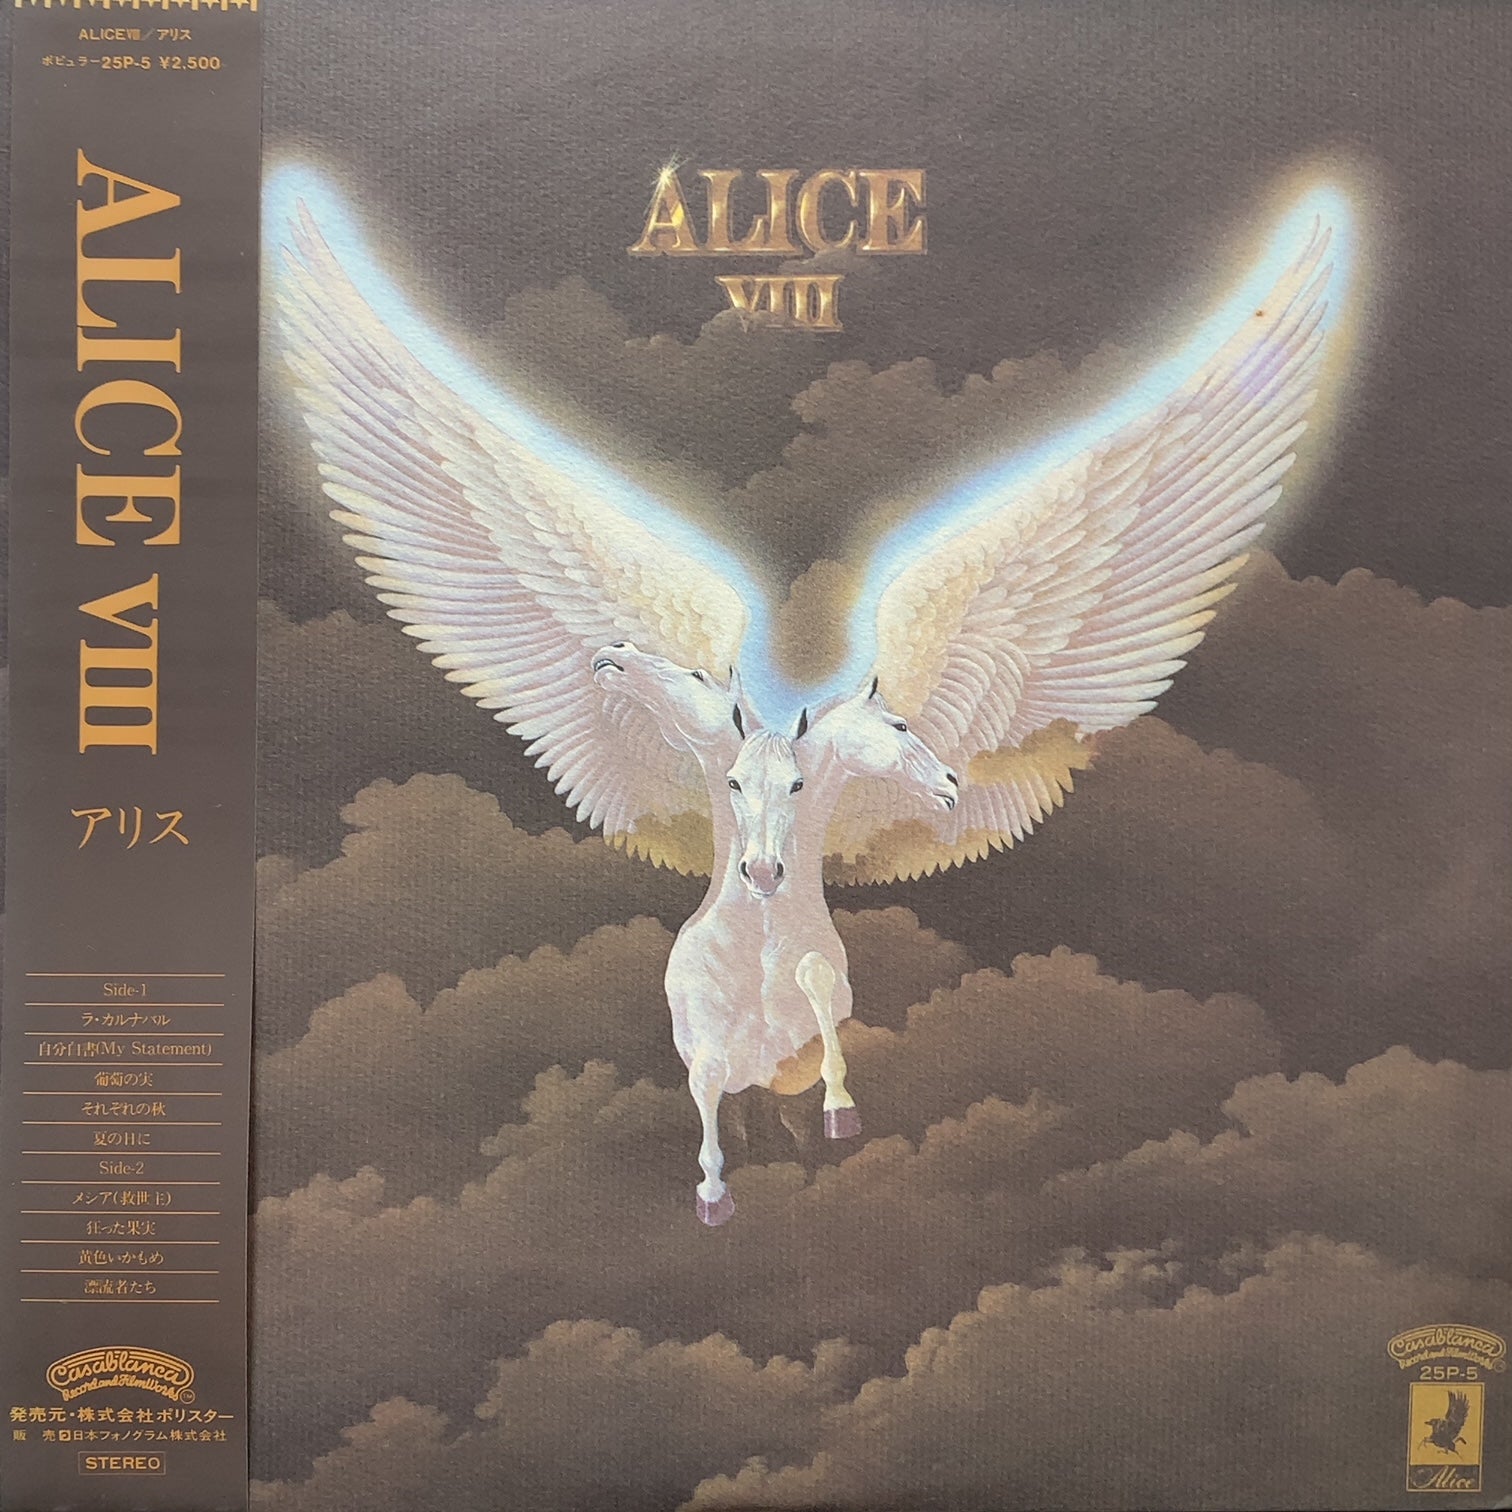 ALICE (アリス) / Alice VIII (25P-5, LP) 帯付 – TICRO MARKET